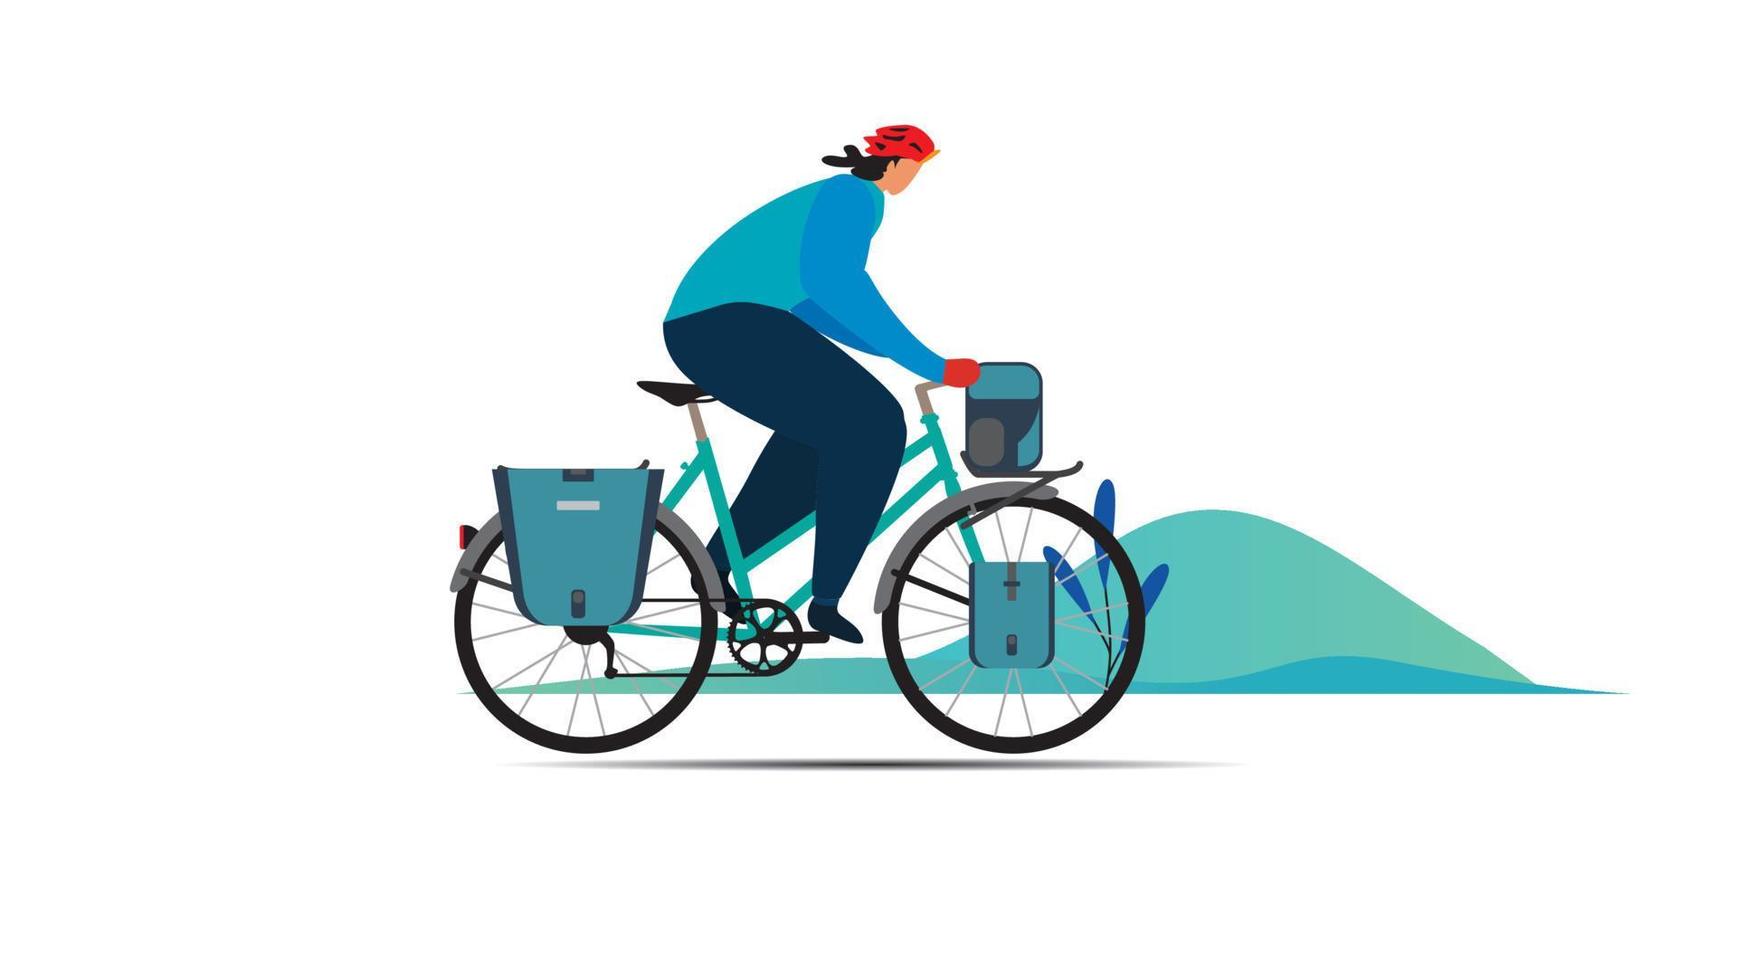 Fahrrad-Abenteuer-Geek-Reise-Lifestyle-Konzept der Planung eines Sommerurlaubs Tourismus- und Reisesymbol Fahrrad-Gebirgswald-moderne flache Design-Ikonen-Vorlagen-Vektorillustration vektor